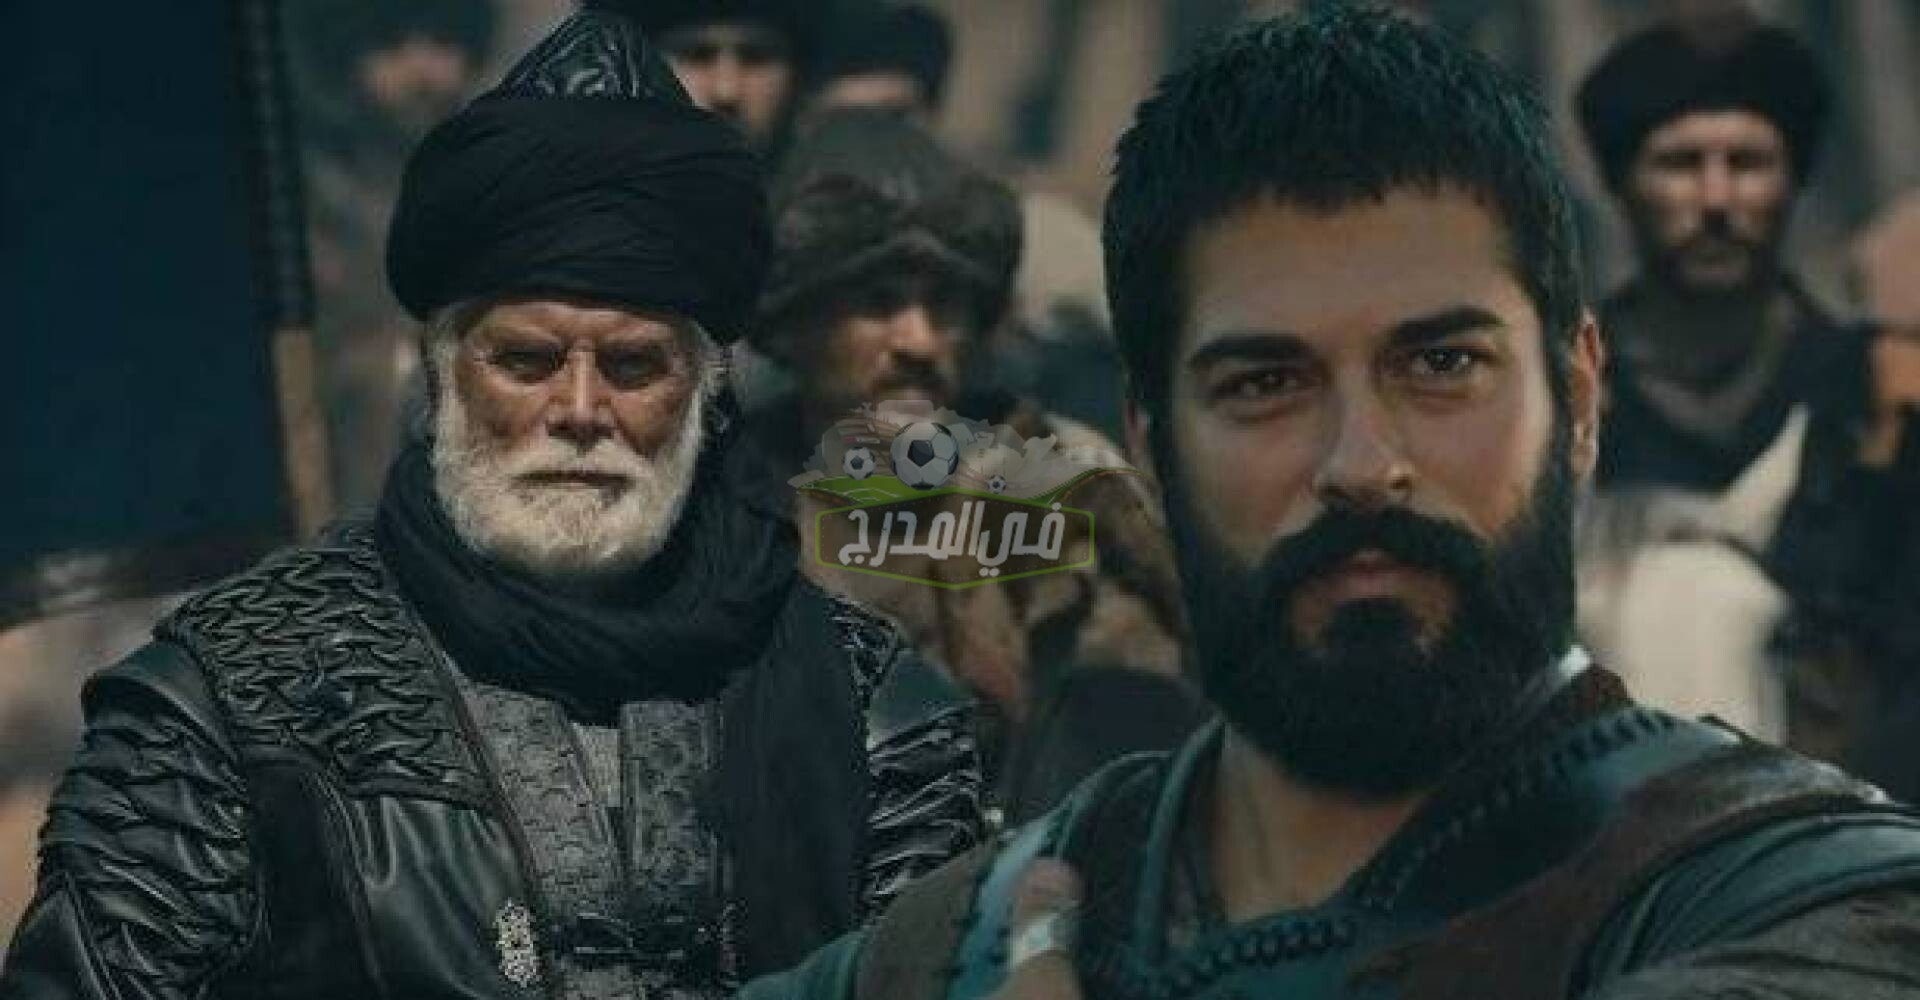 عثمان 42.. عرض مسلسل قيامة عثمان الحلقة 42 على قناة atv وكشف الخونة